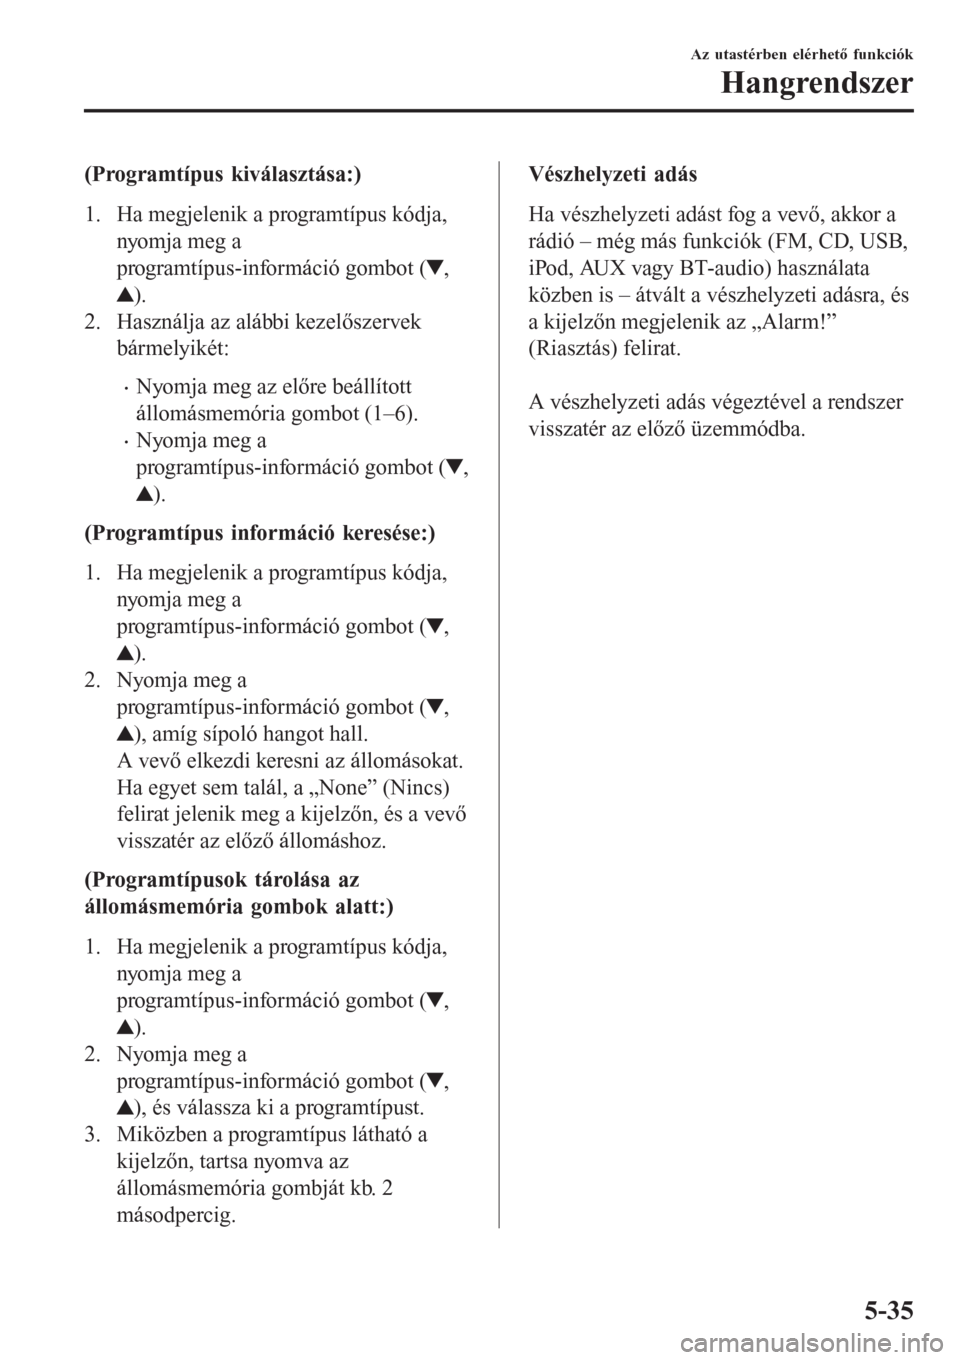 MAZDA MODEL CX-3 2015  Kezelési útmutató (in Hungarian) (Programtípus kiválasztása:)
1. Ha megjelenik a programtípus kódja,
nyomja meg a
programtípus-információ gombot (
,
).
2. Használja az alábbi kezelőszervek
bármelyikét:
•Nyomja meg az e